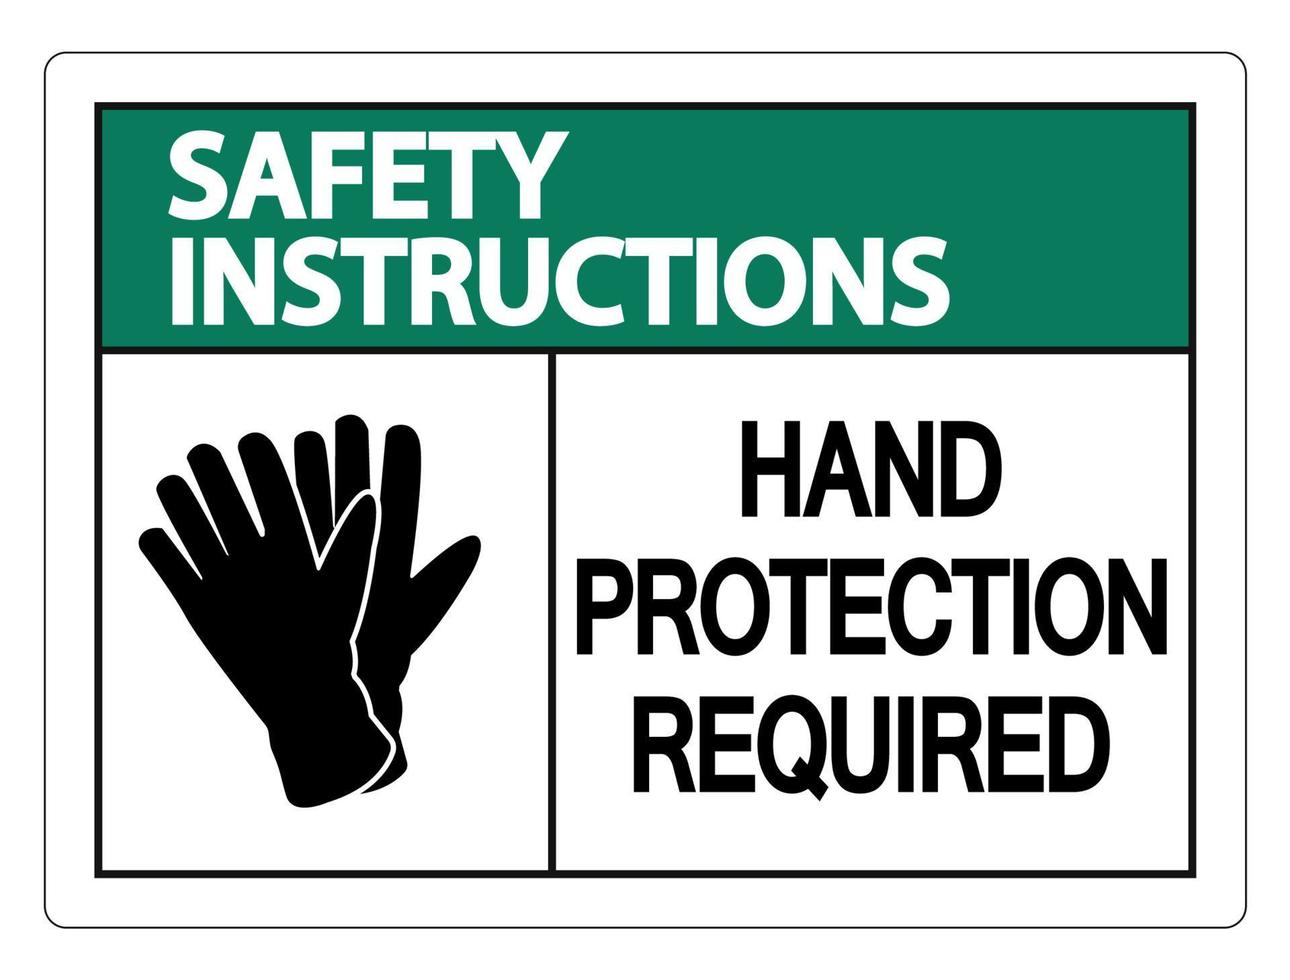 instruções de segurança proteção das mãos necessária placa de parede em fundo branco vetor